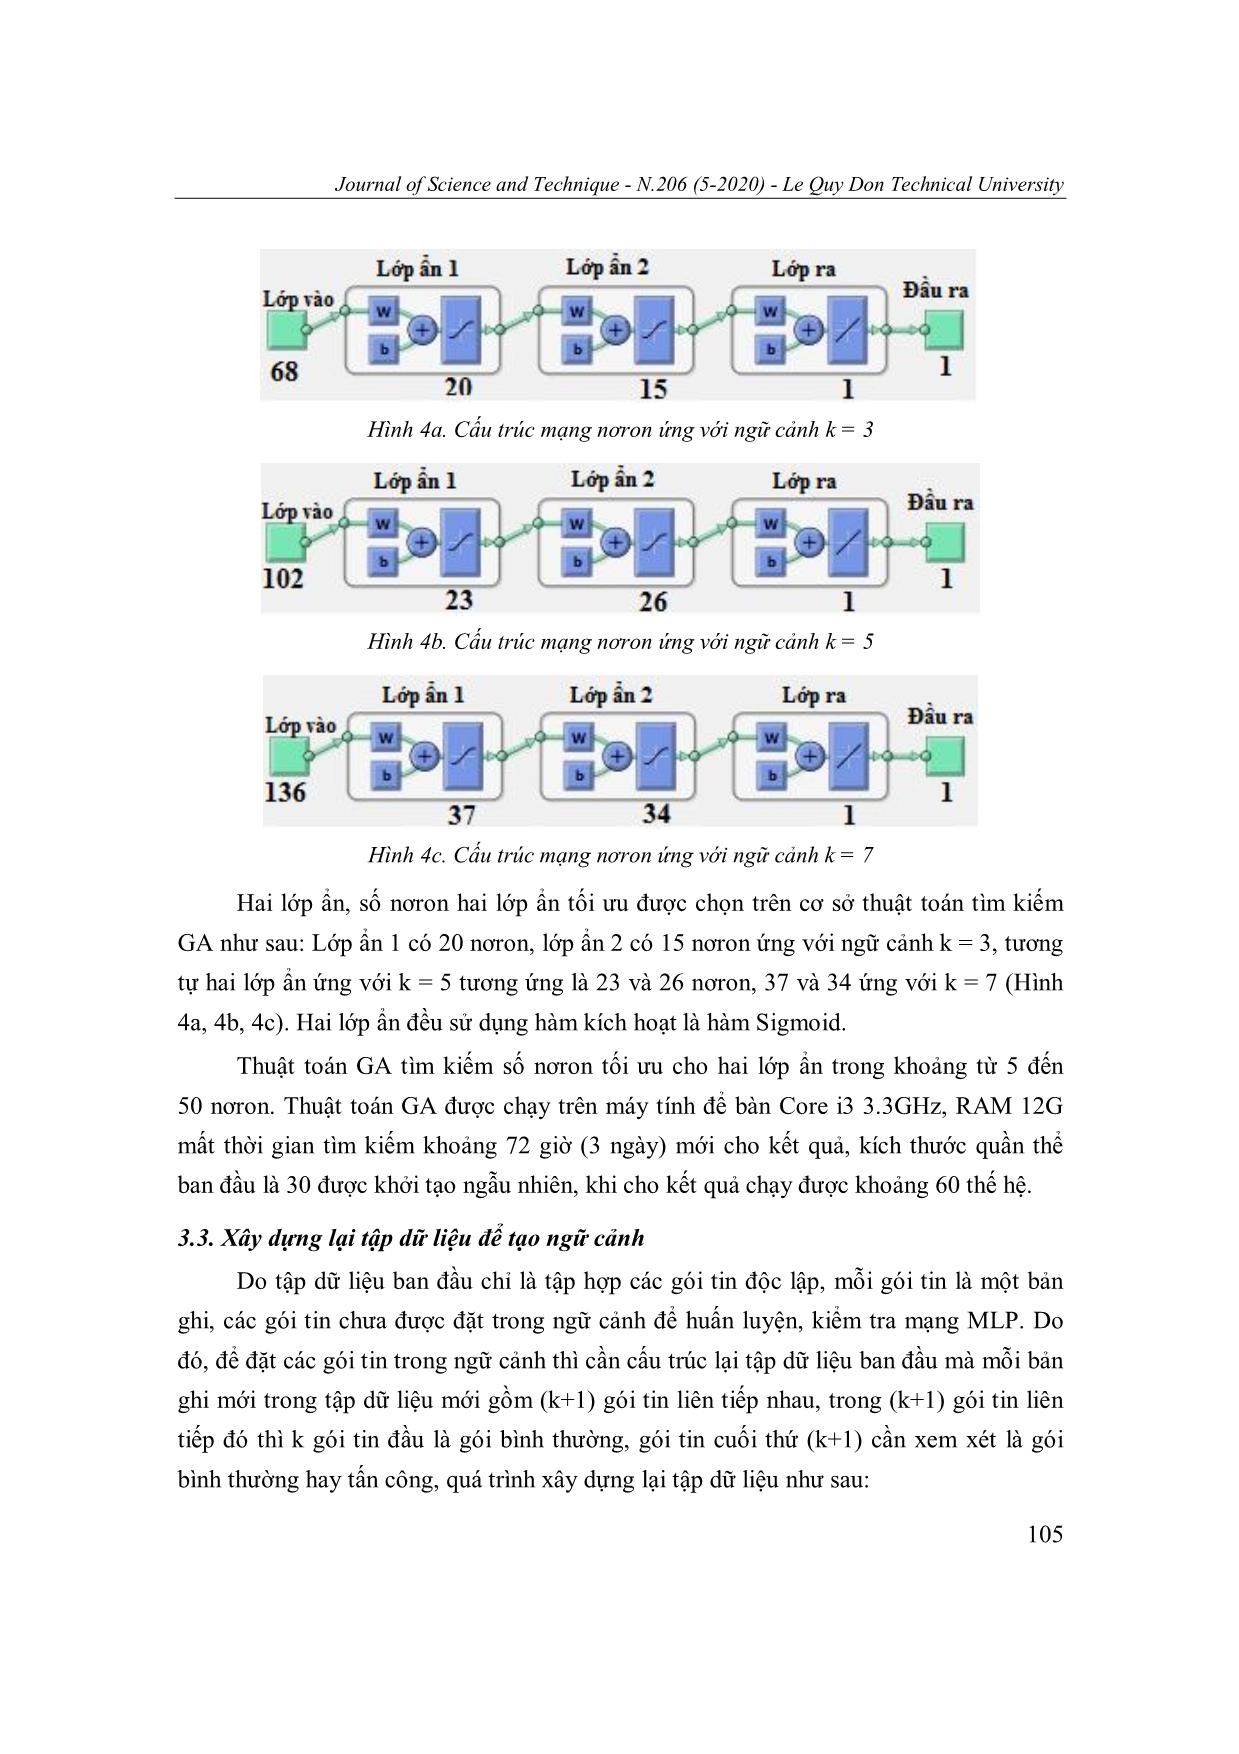 Một phương án tổ chức ngữ cảnh dữ liệu cho bộ phát hiện tấn công mạng scada sử dụng mạng nơron MLP trang 8